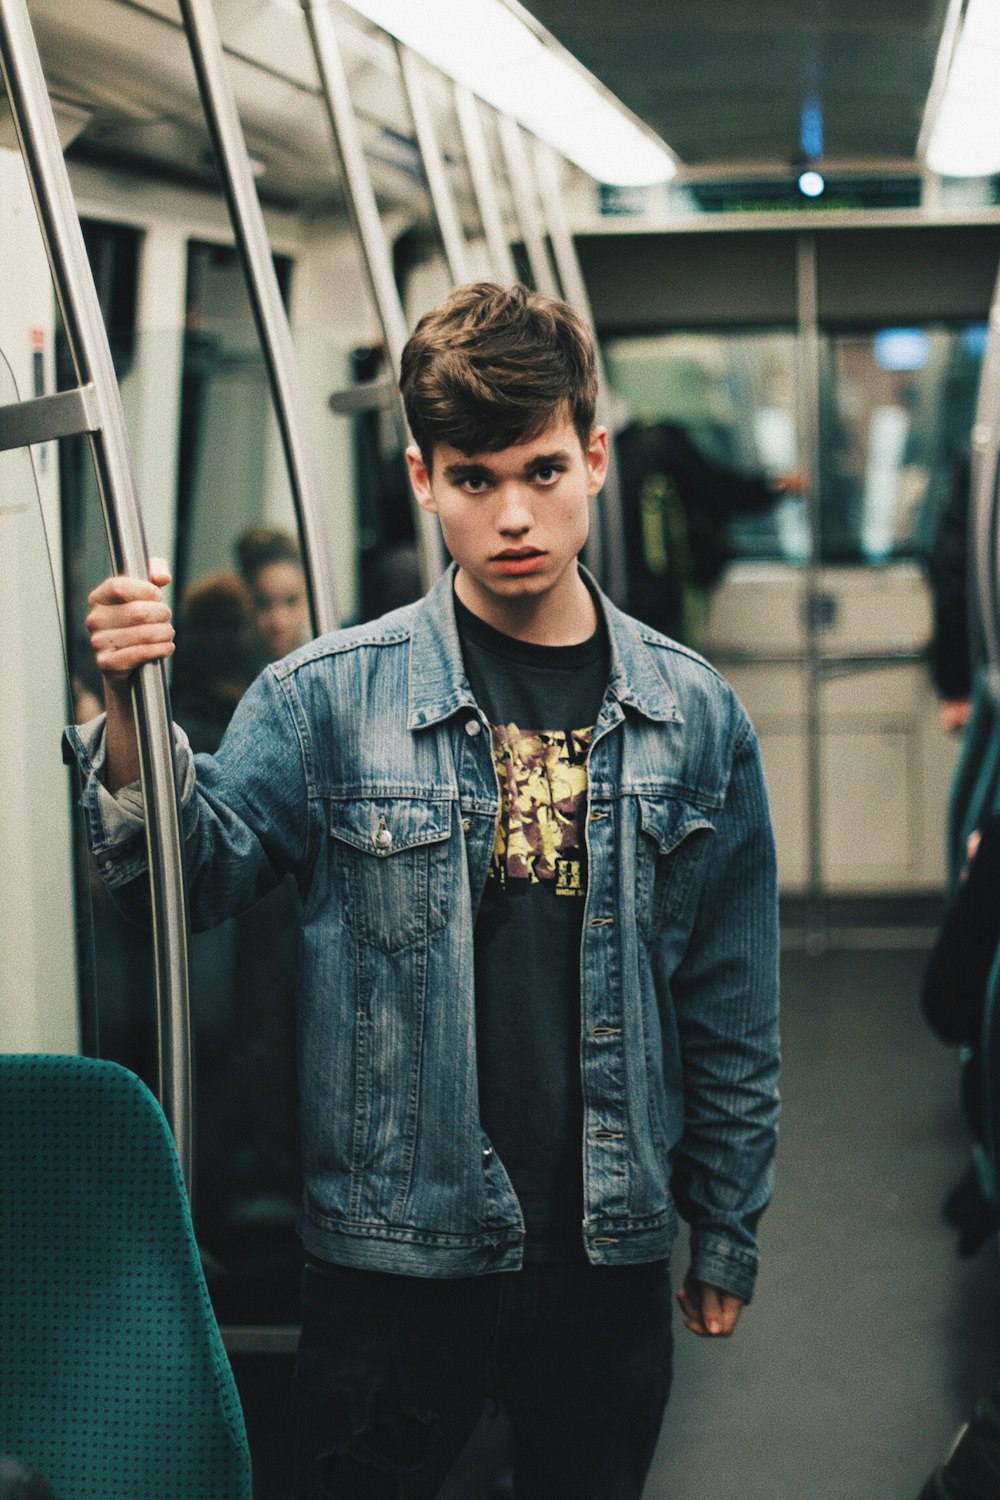 Mann in blauer Jeansjacke steht im Zug